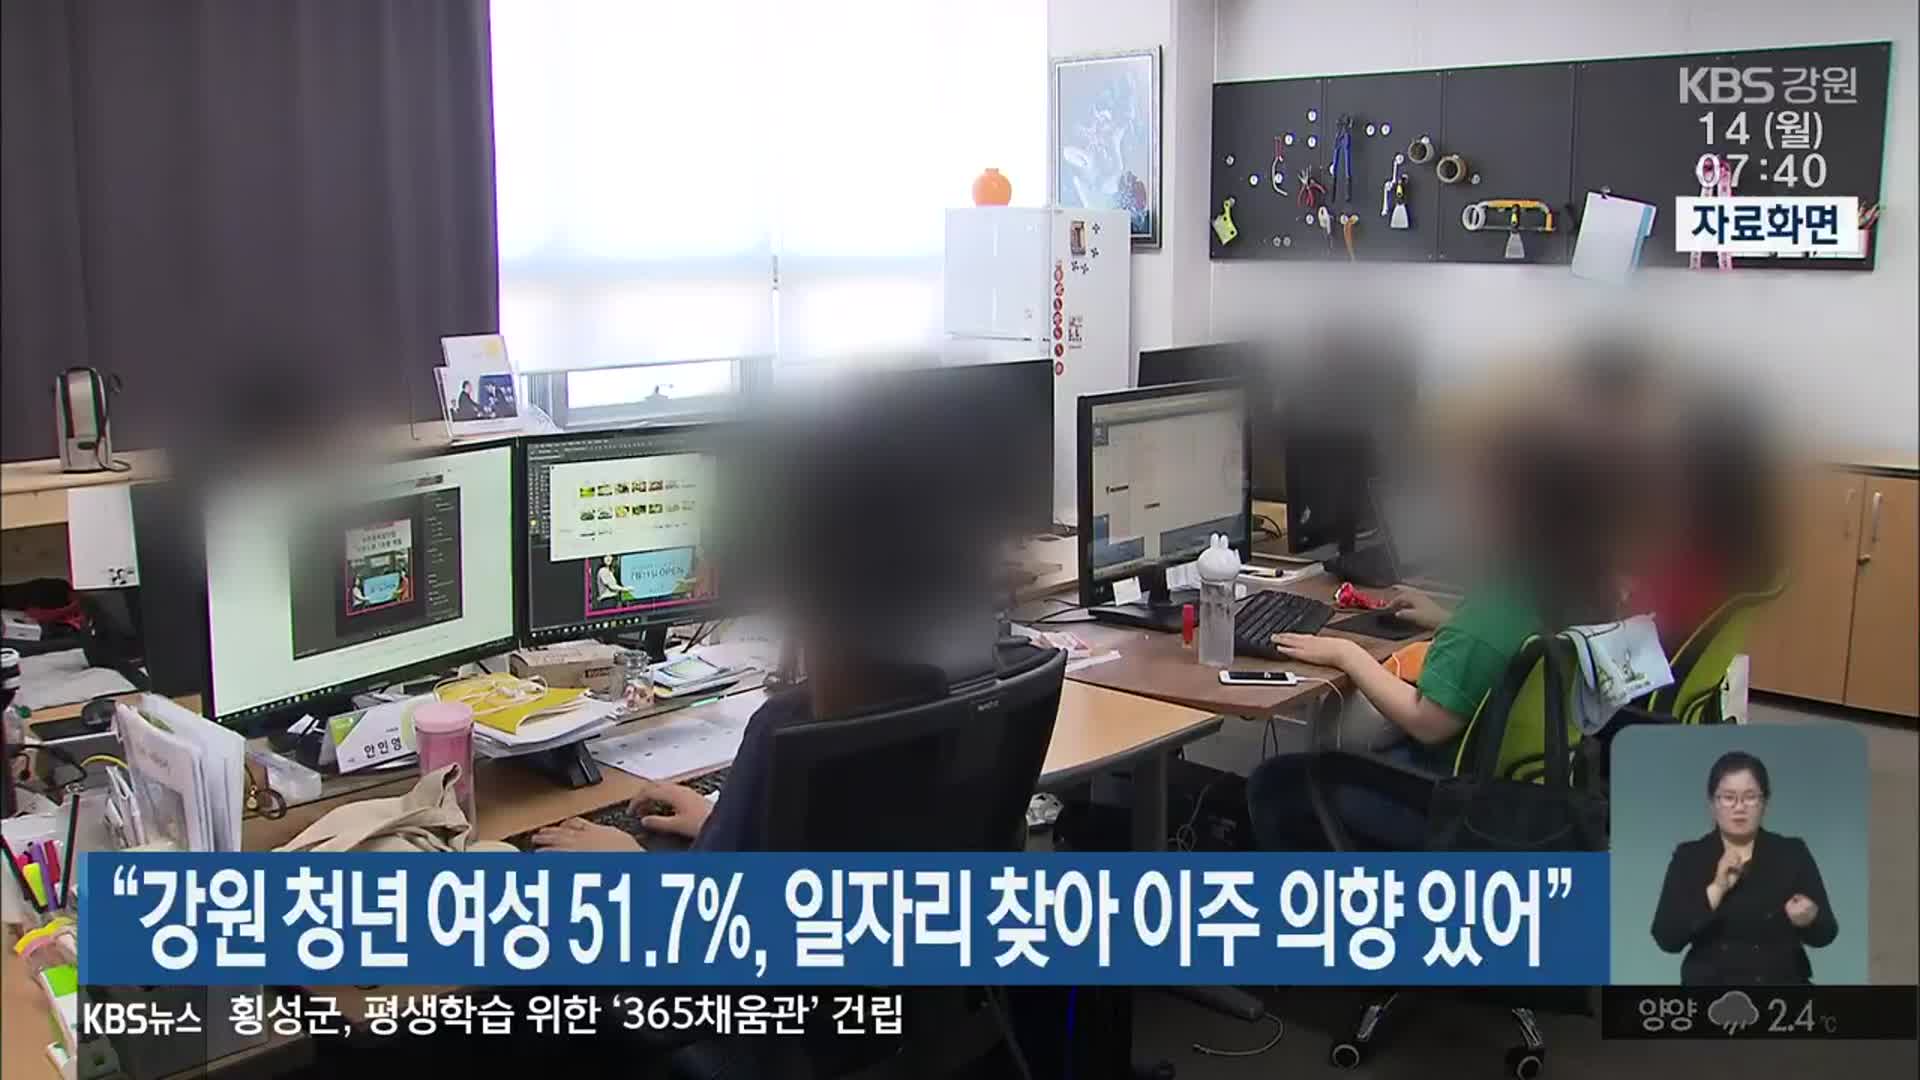 “강원 청년 여성 51.7%, 일자리 찾아 이주 의향 있어”